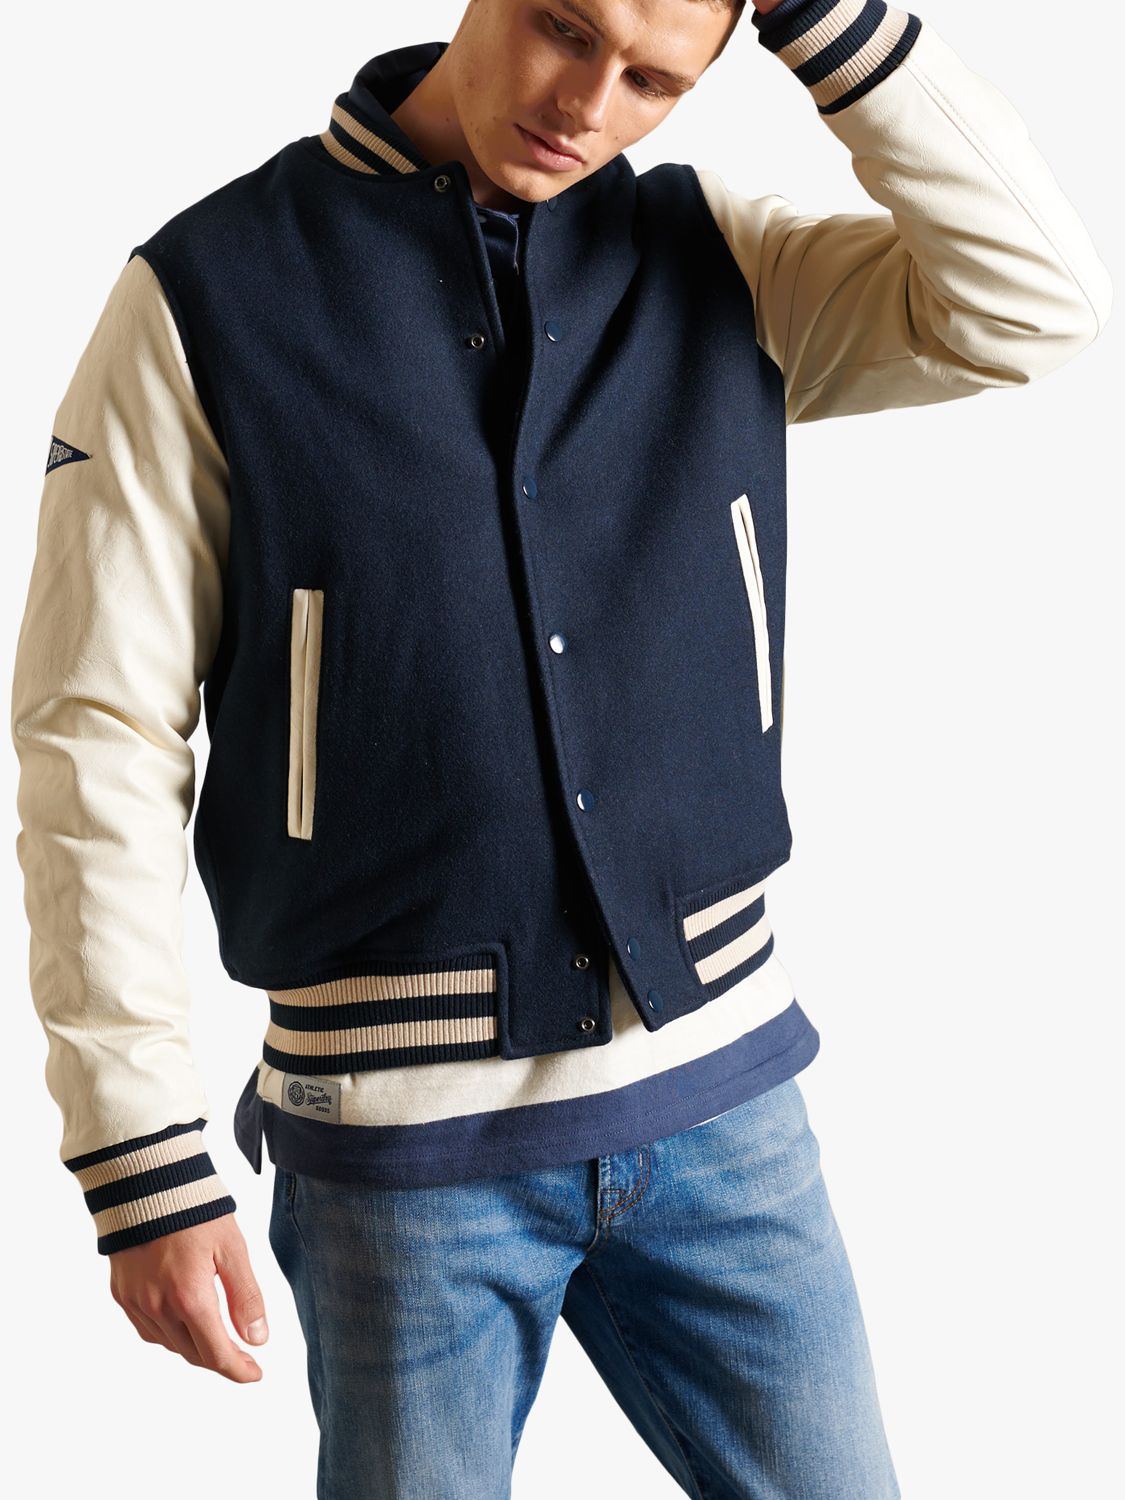 Jacks N Hoods Navy Blue Varsity Jacket White Leather Sleeves Black Stripes - Jack N Hoods L